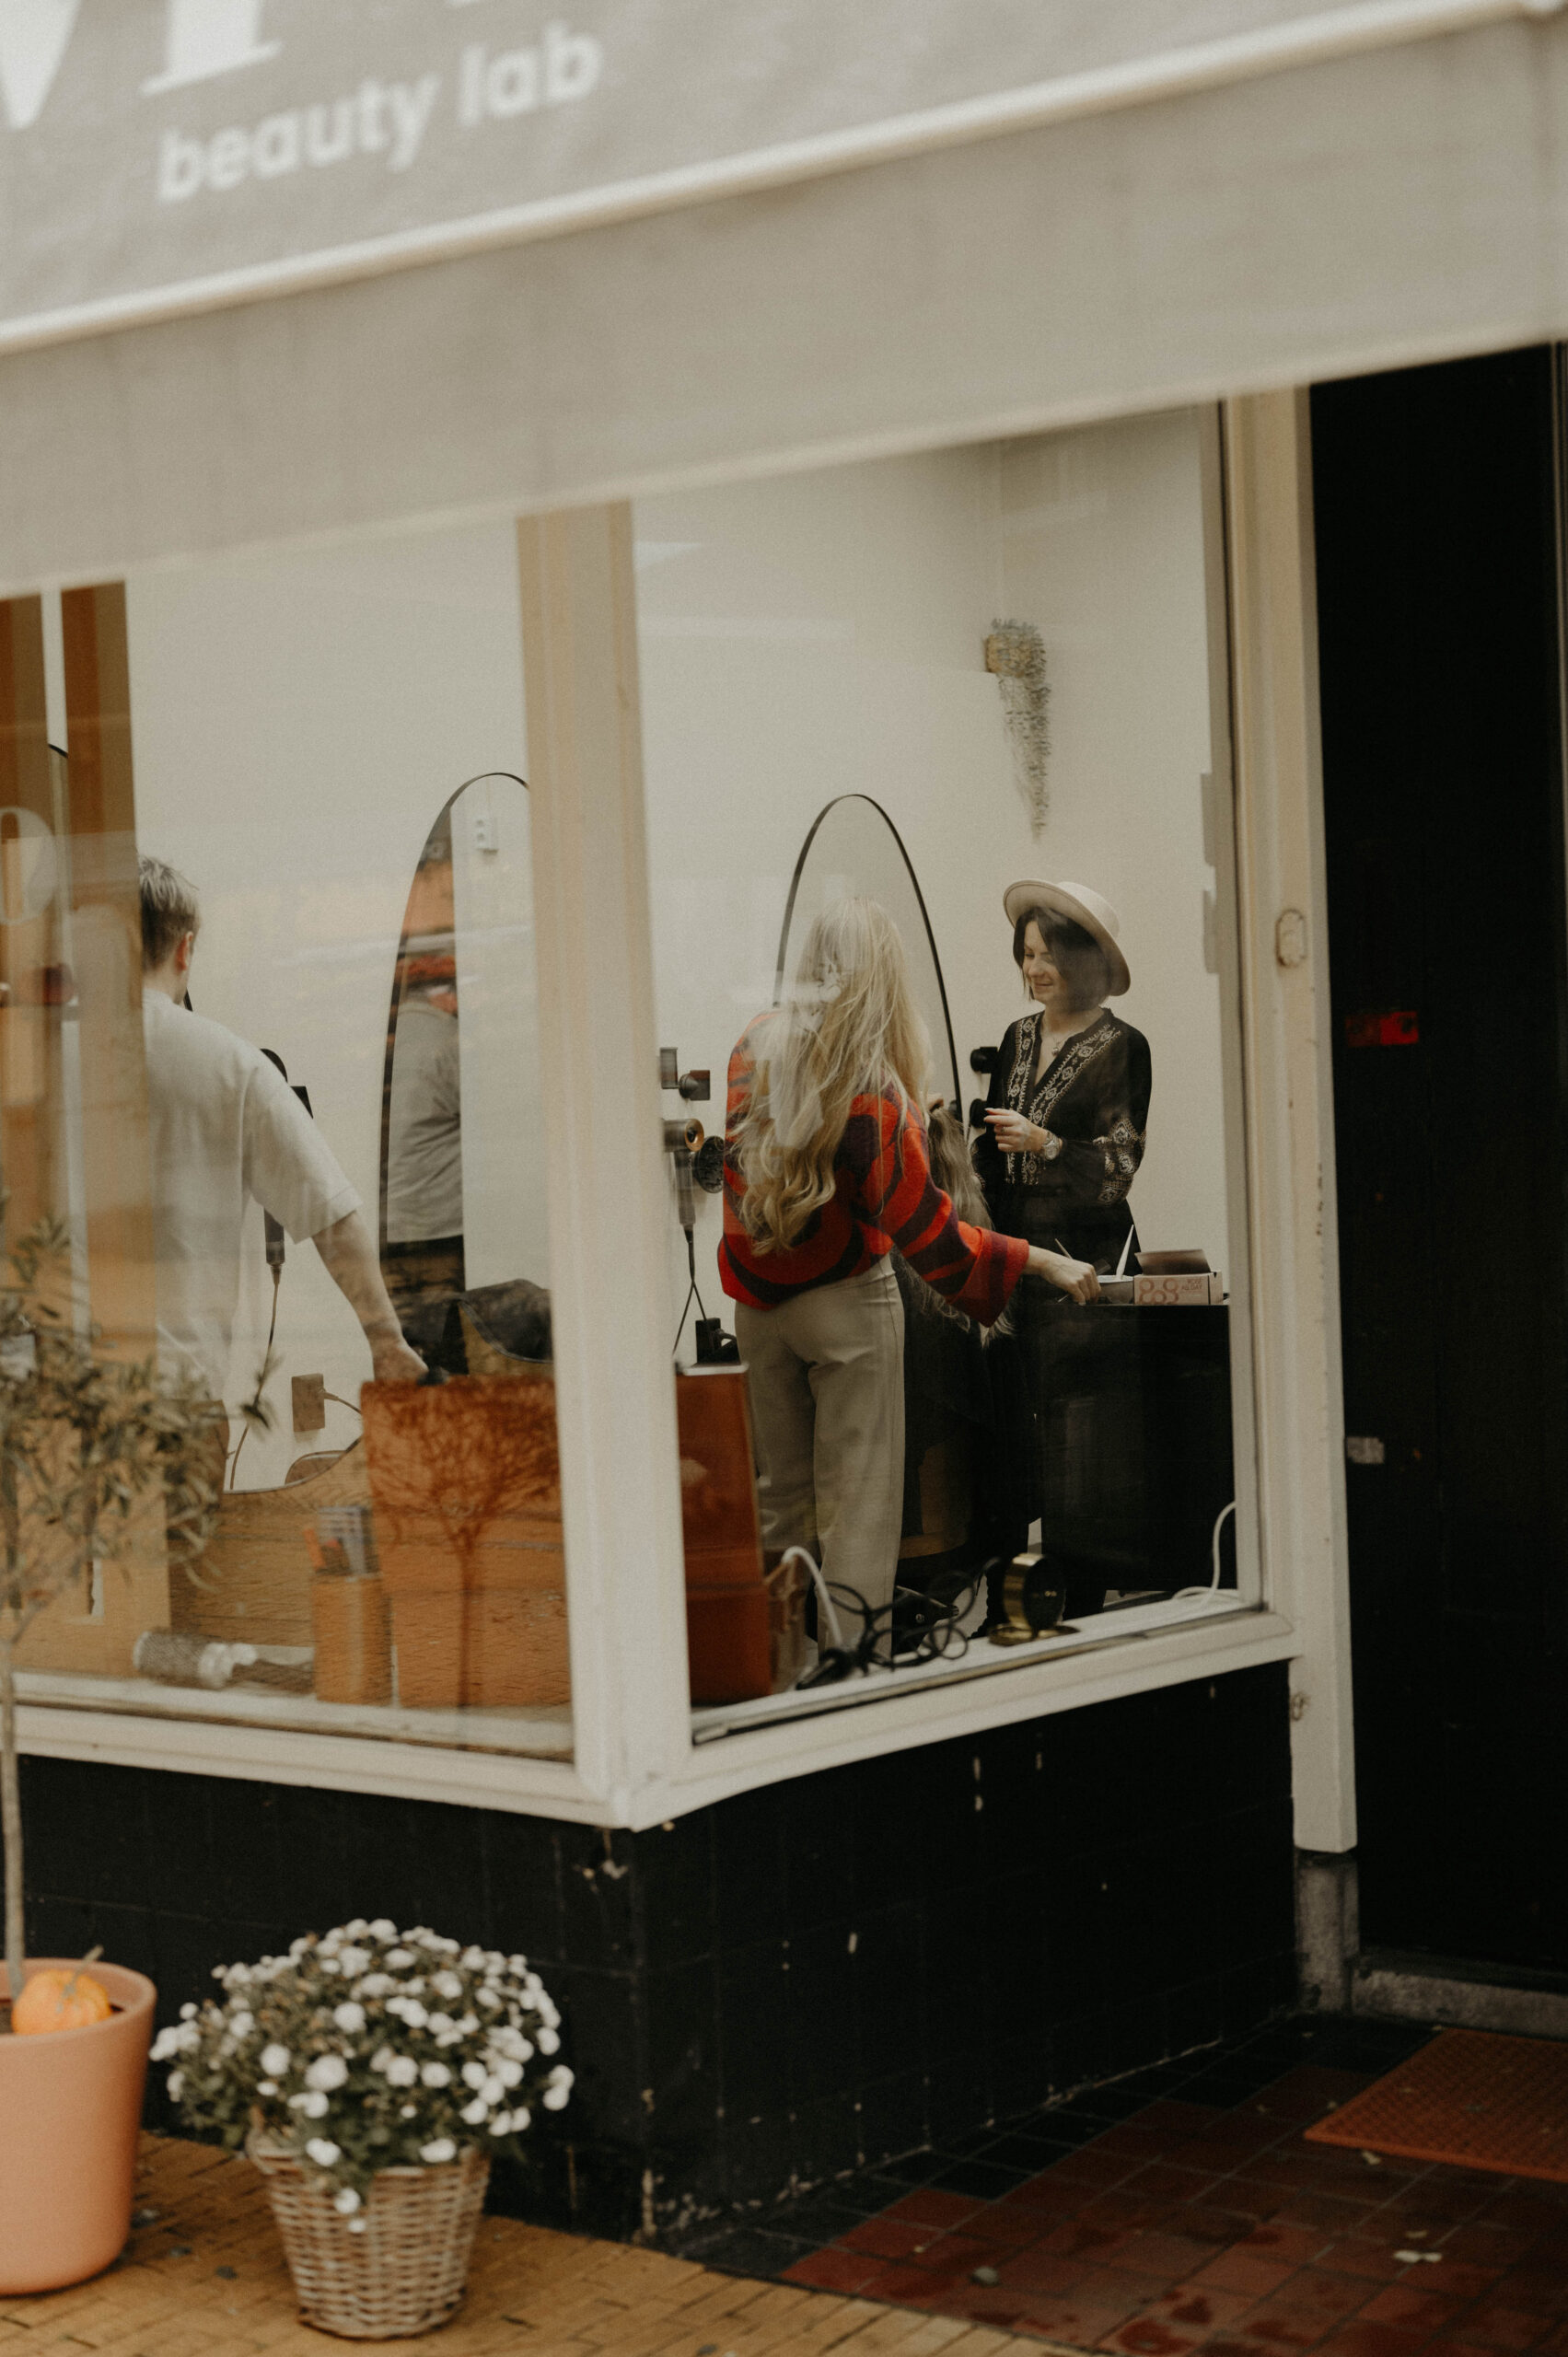 Een blik door het raam van 'beauty lab' onthult een hair weave specialist, Noel, die aan het werk is in de salon.</p>
<p>